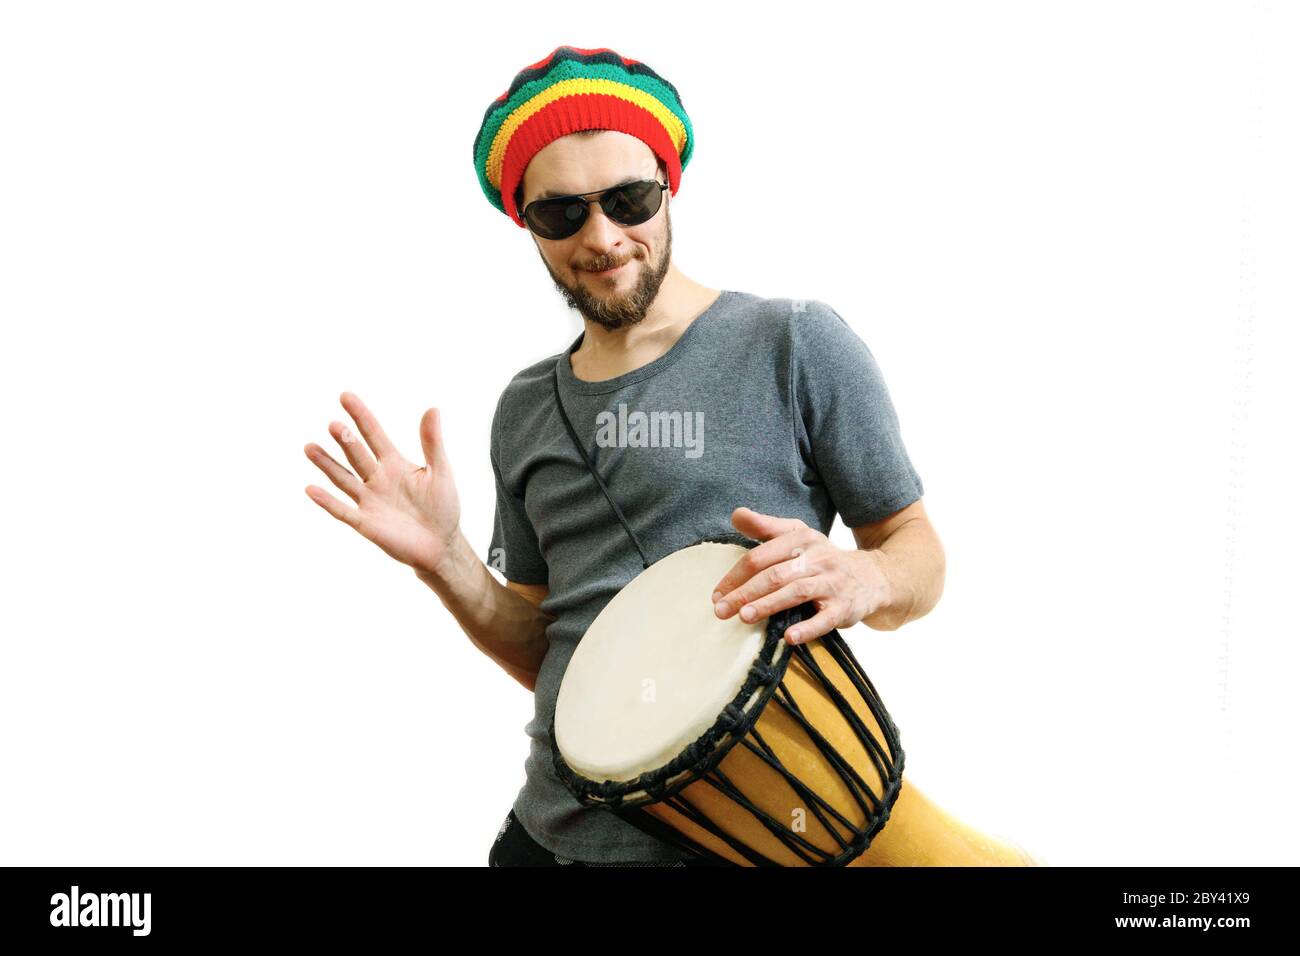 Giovane uomo caucasico in cappello rasta, occhiali da sole e t-shirt grigia  su sfondo bianco giocano sul tamburo africano djembe Foto stock - Alamy